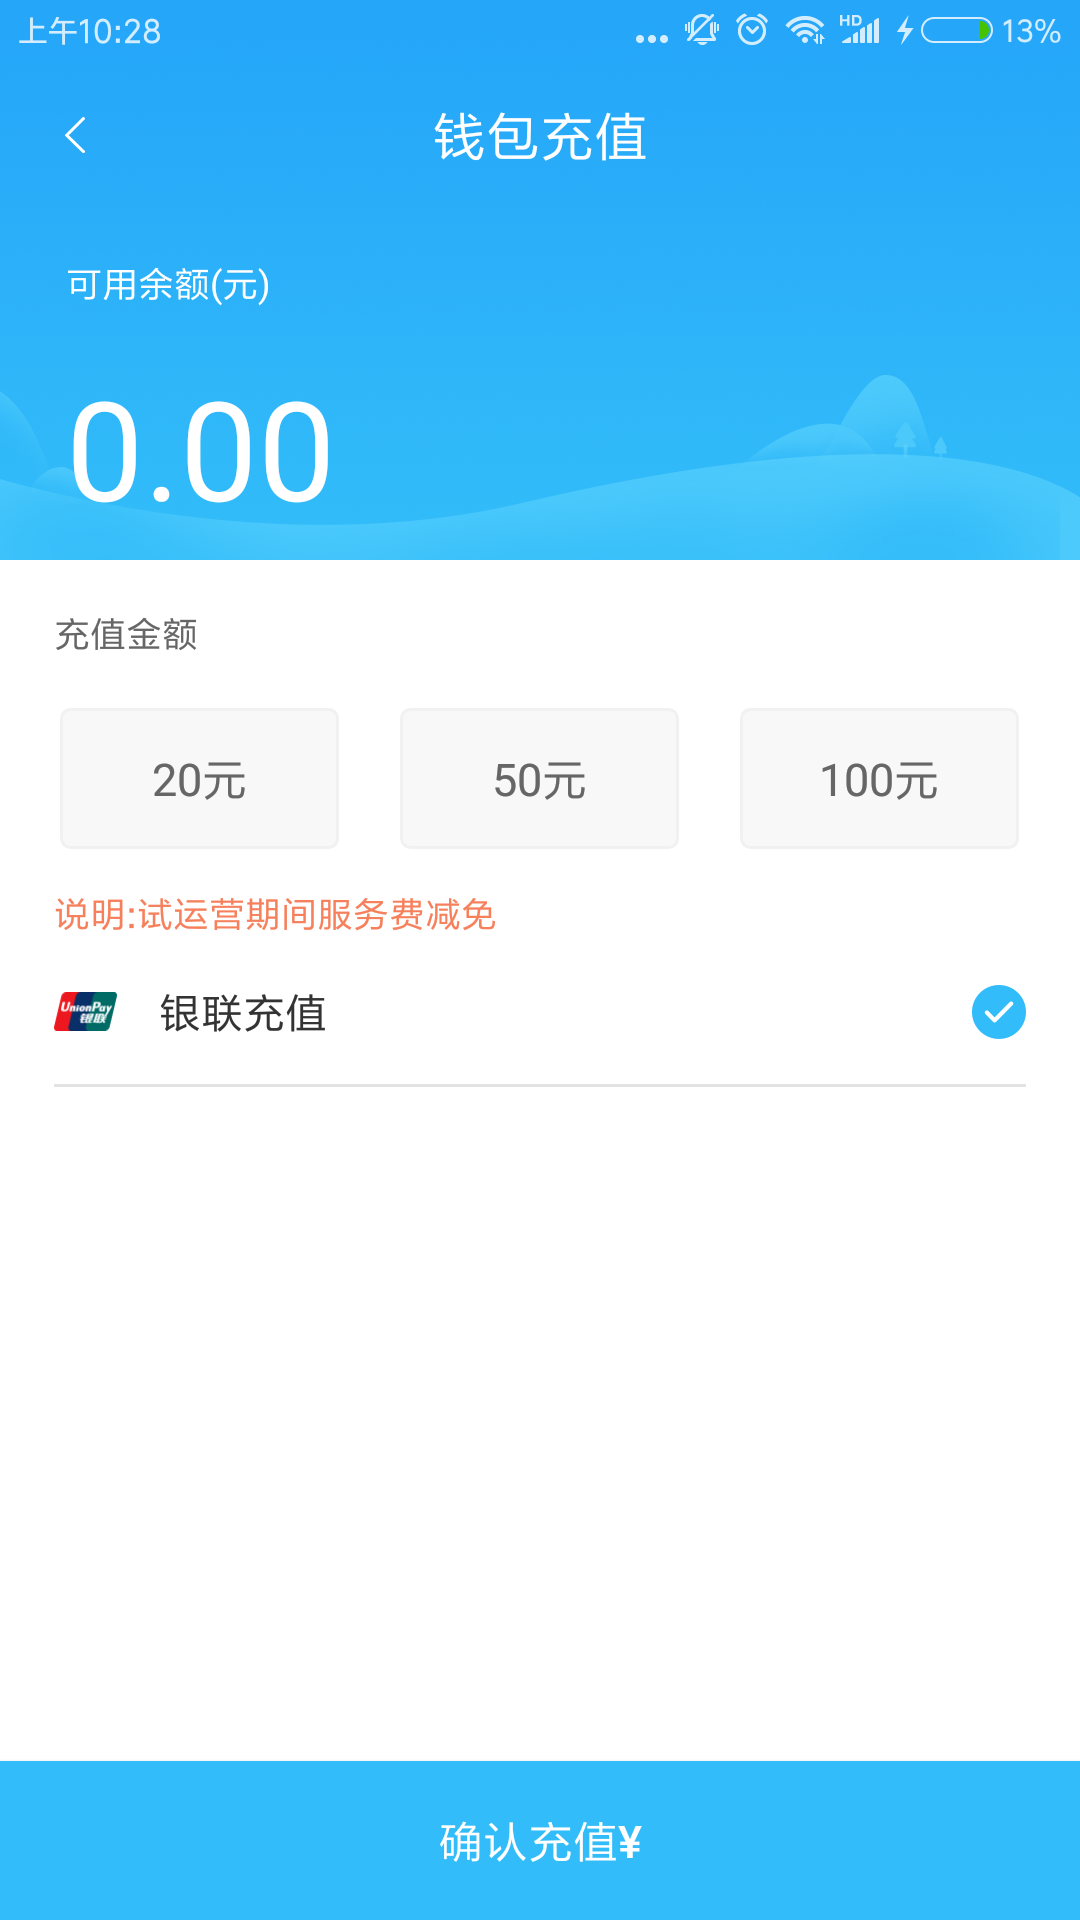 吉安公交服务app